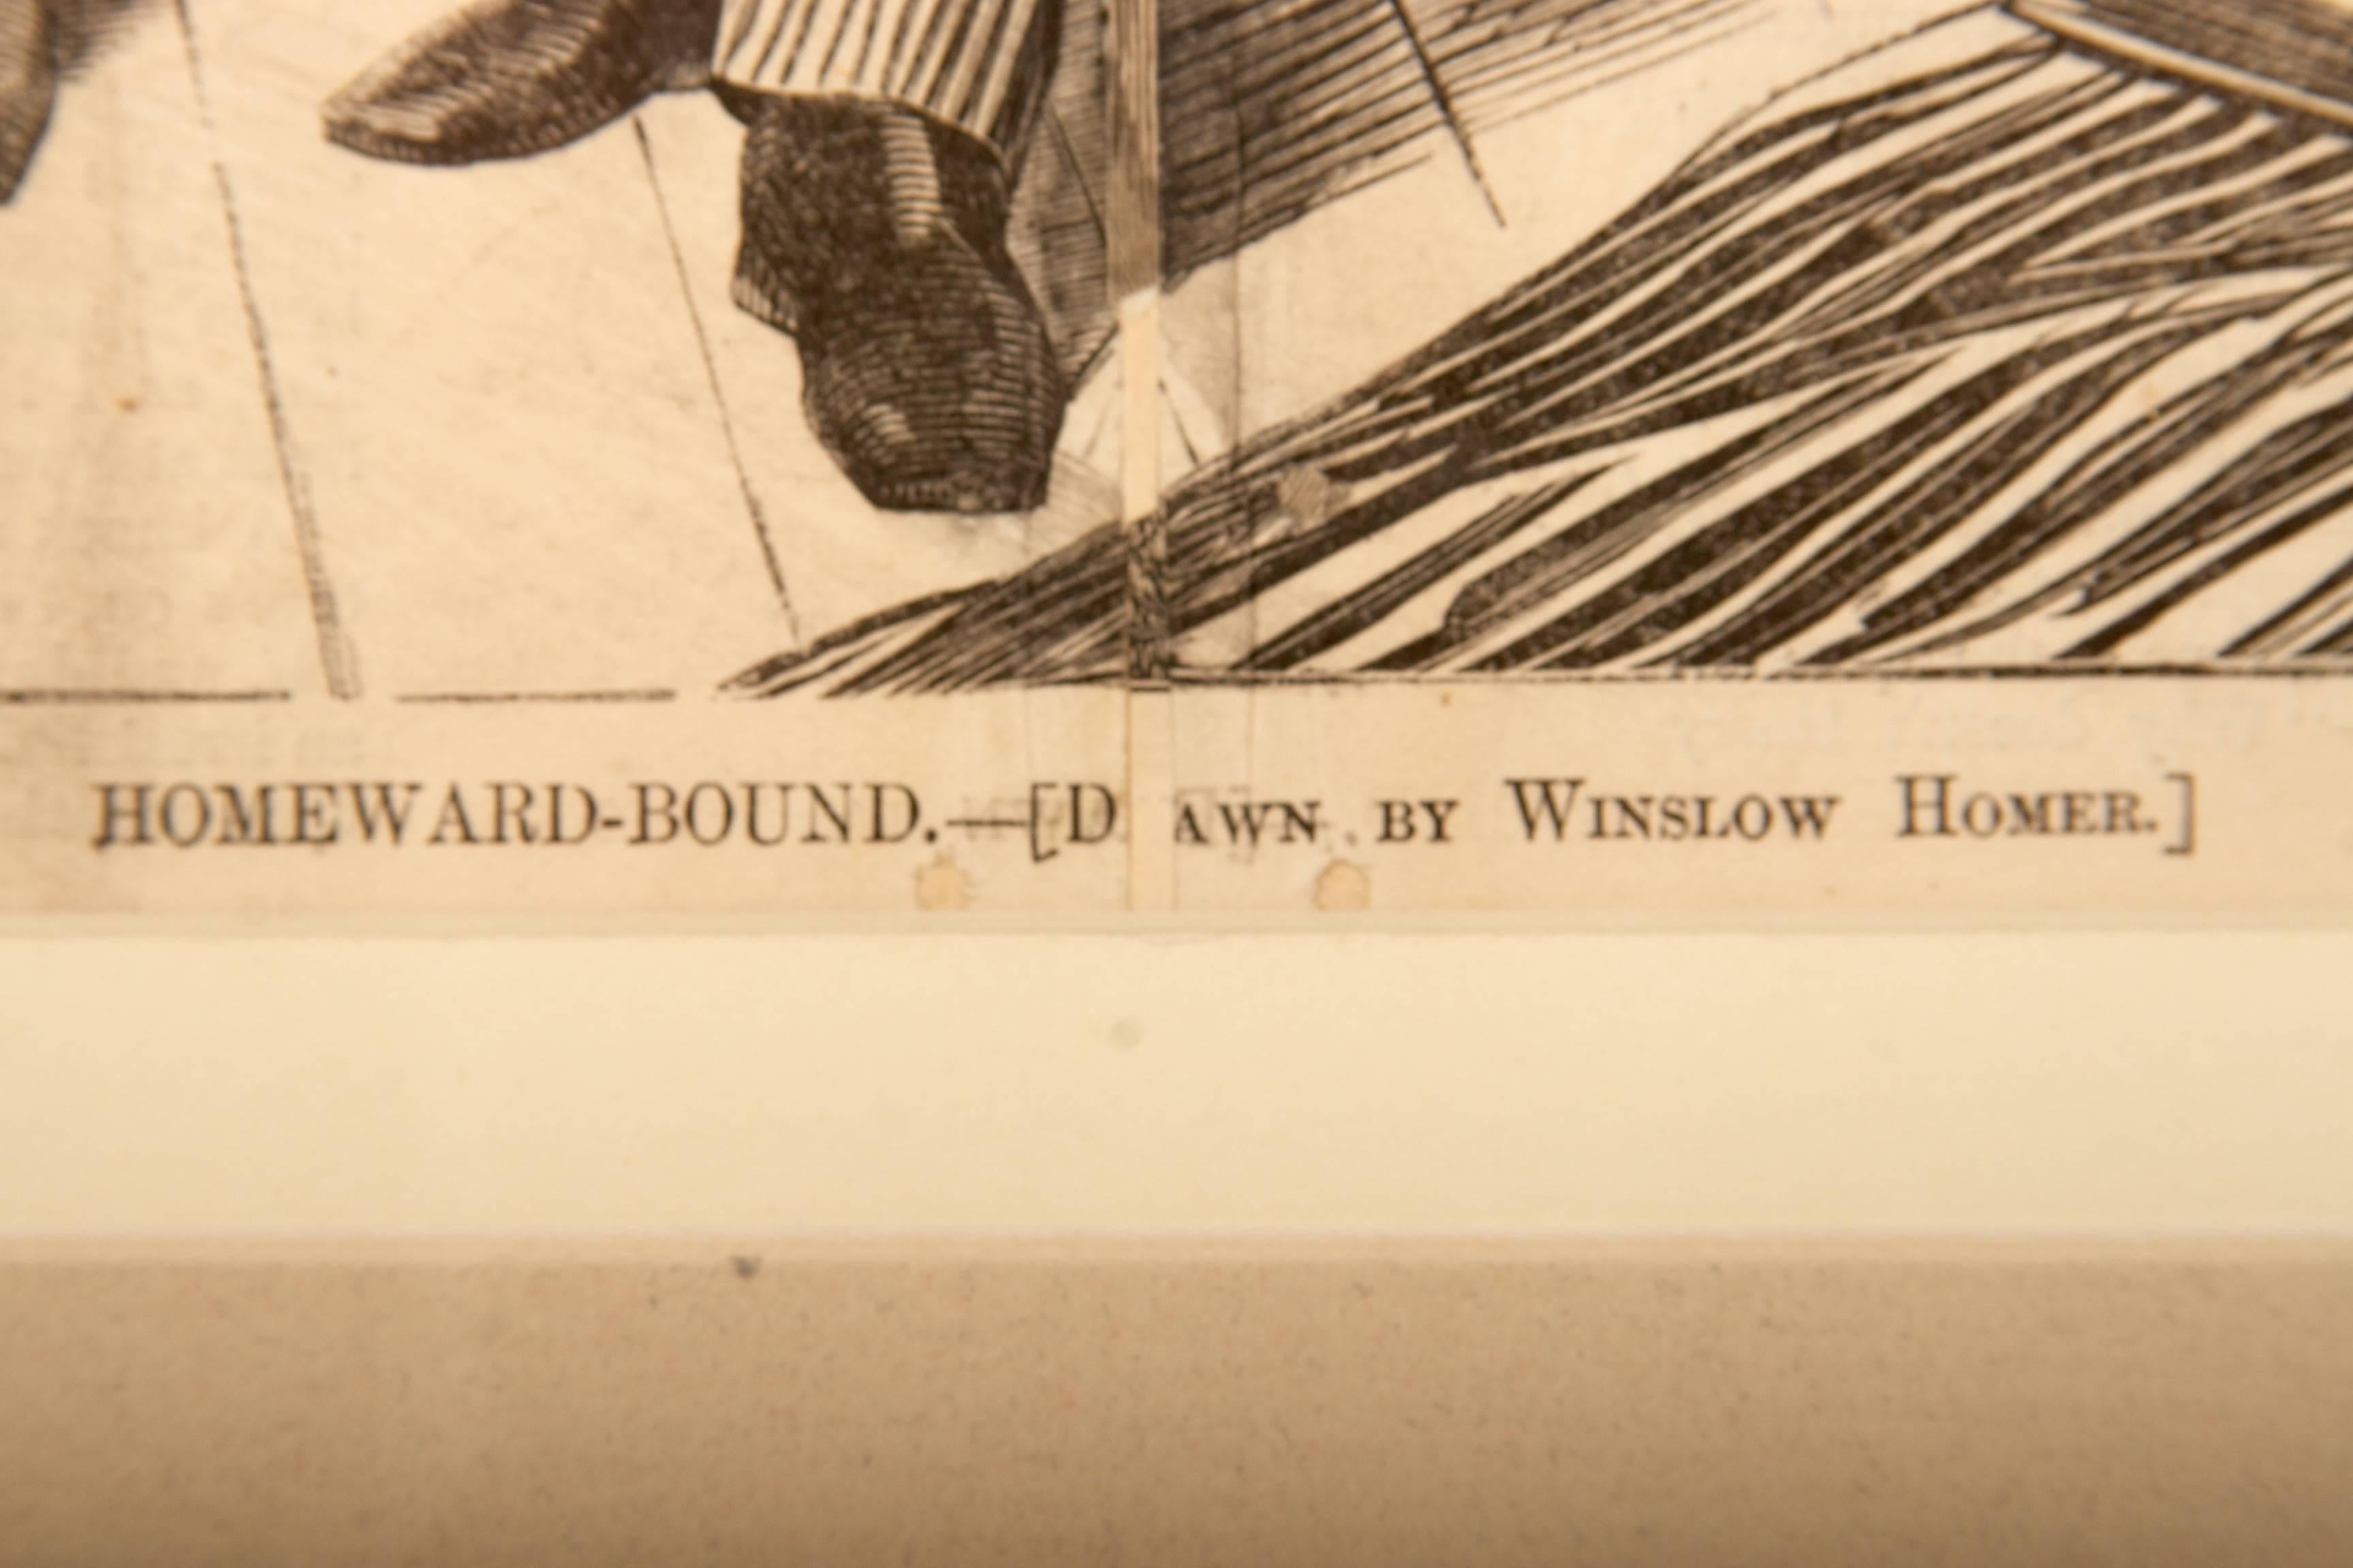 Paper “Homeward Bound” by Winslow Homer